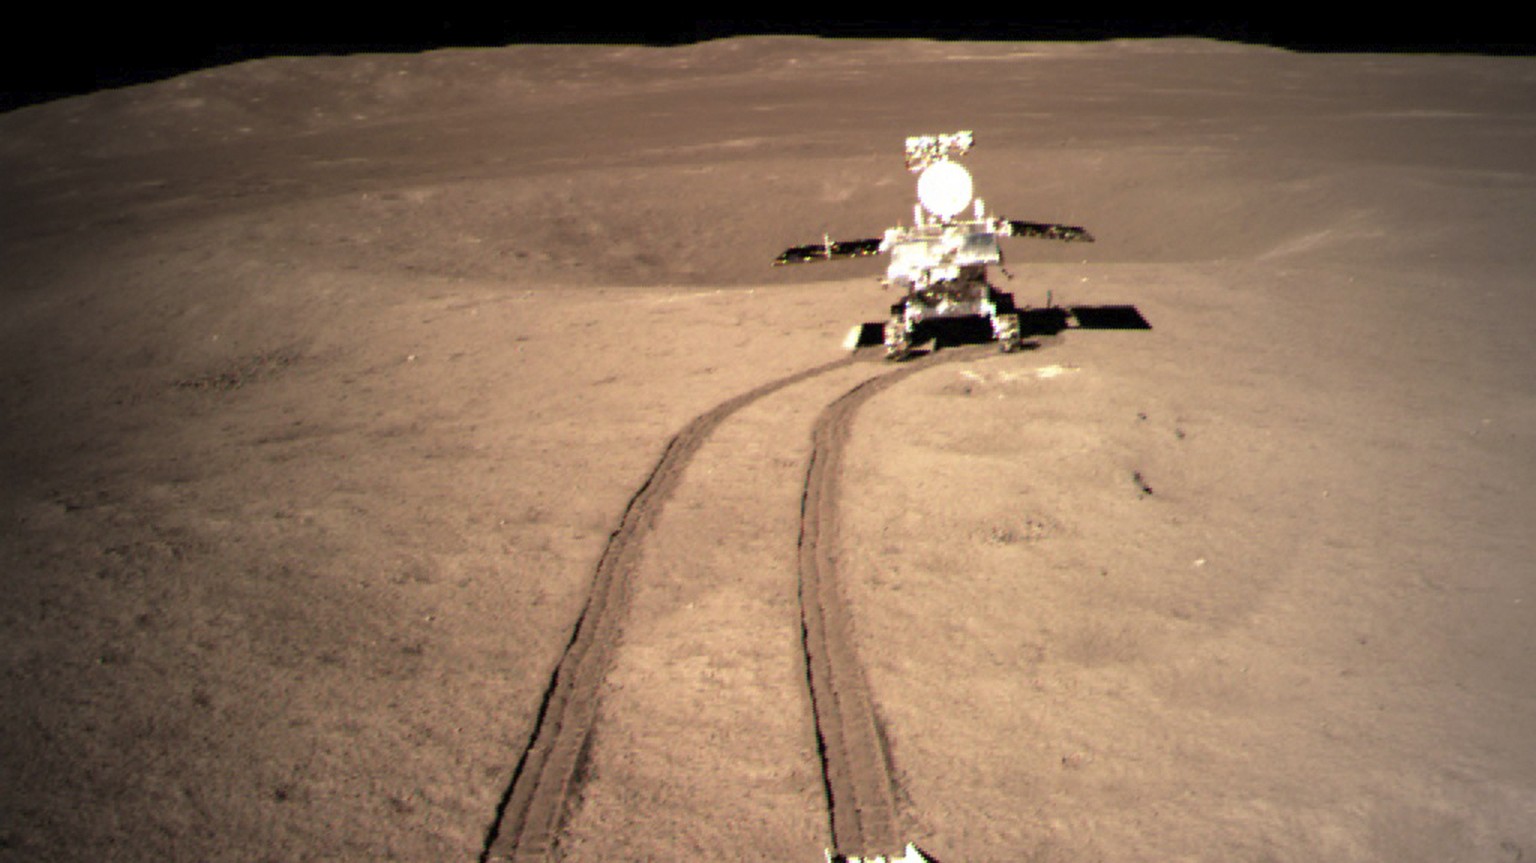 Jadehase auf Mond-Erkundung: Der chinesische Mond-Rover Yutu-2 im Januar 2019, nachdem er den Lander verlassen hatte. Yutu-2 schoss die Aufnahme des Mondmaterials mit seiner Hauptkamera.